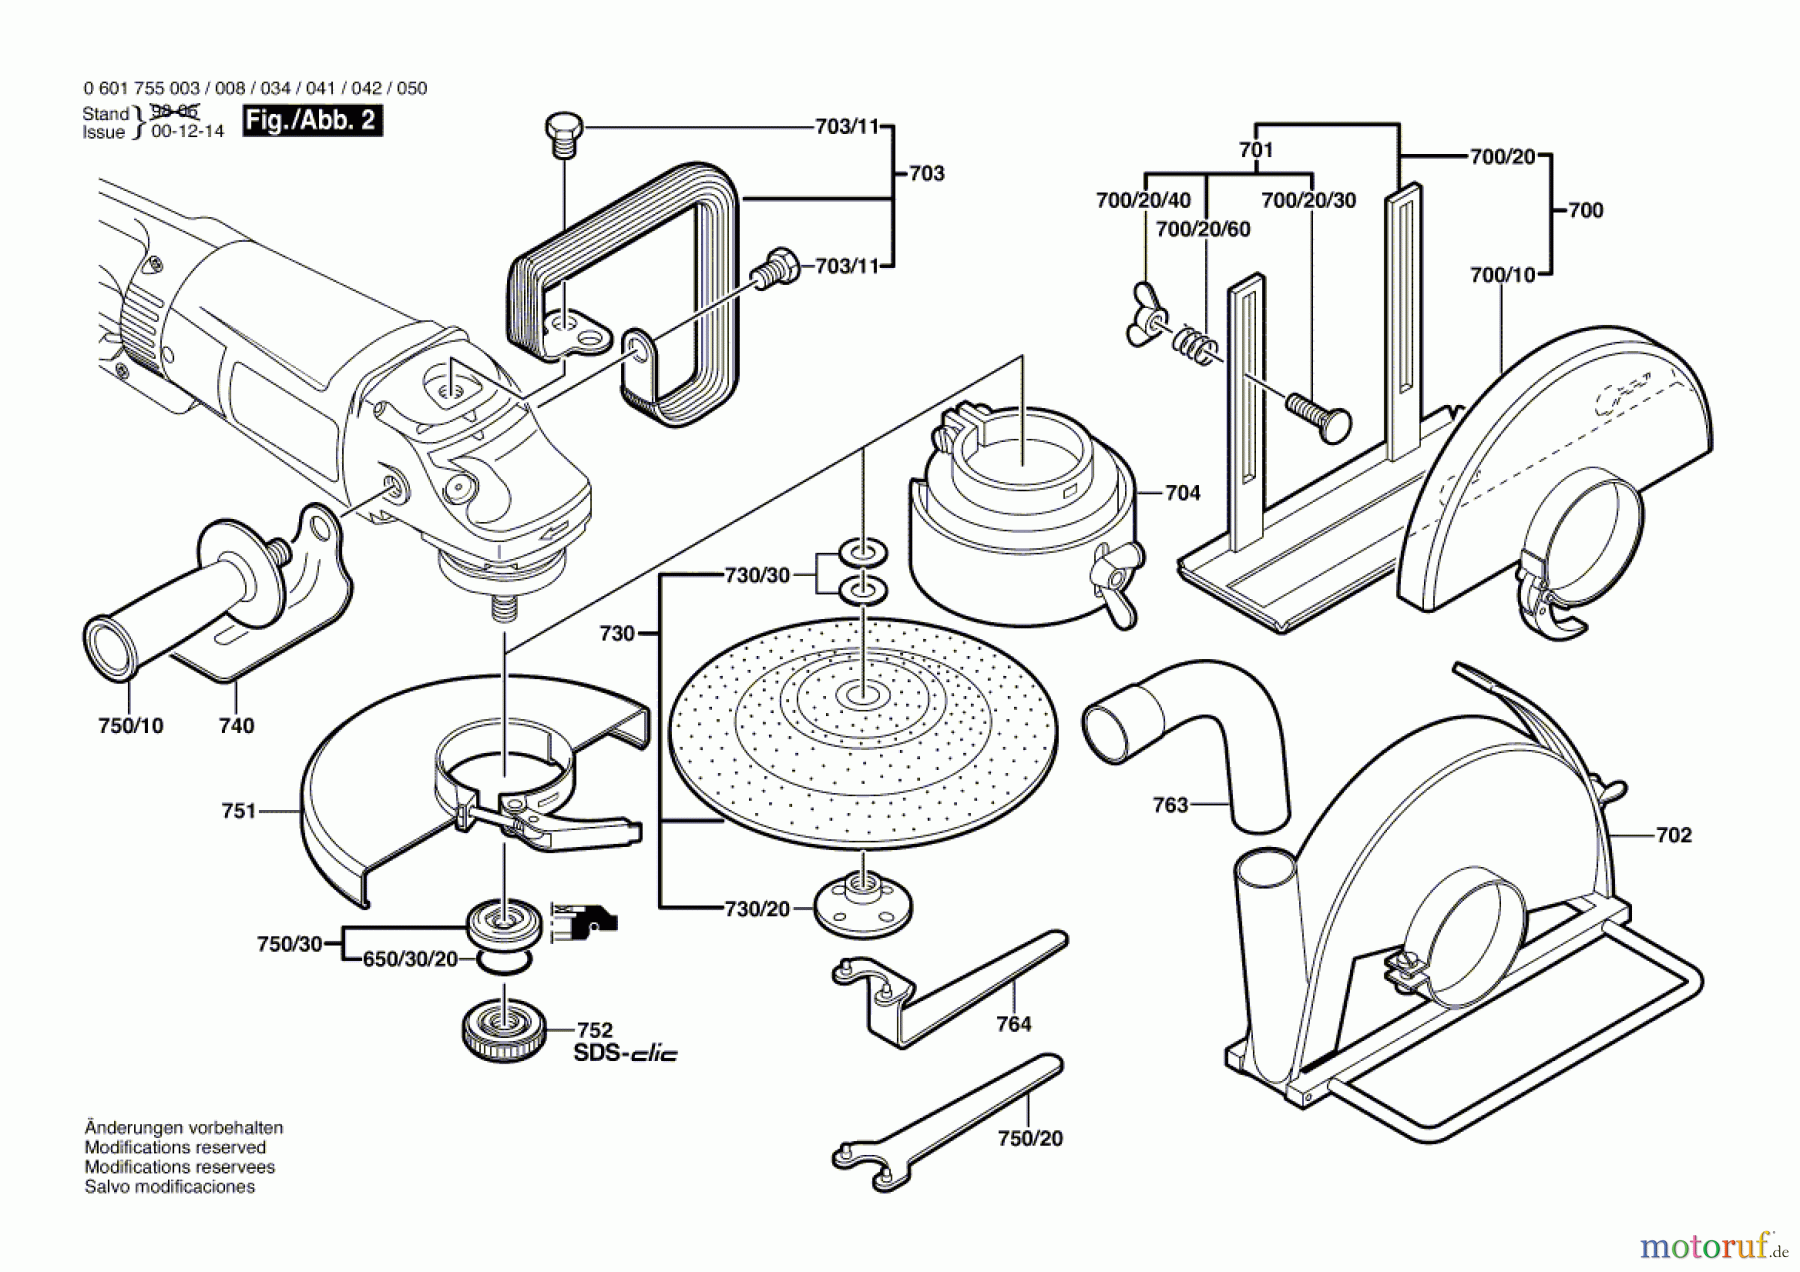  Bosch Werkzeug Winkelschleifer GWS 25-180 Seite 2